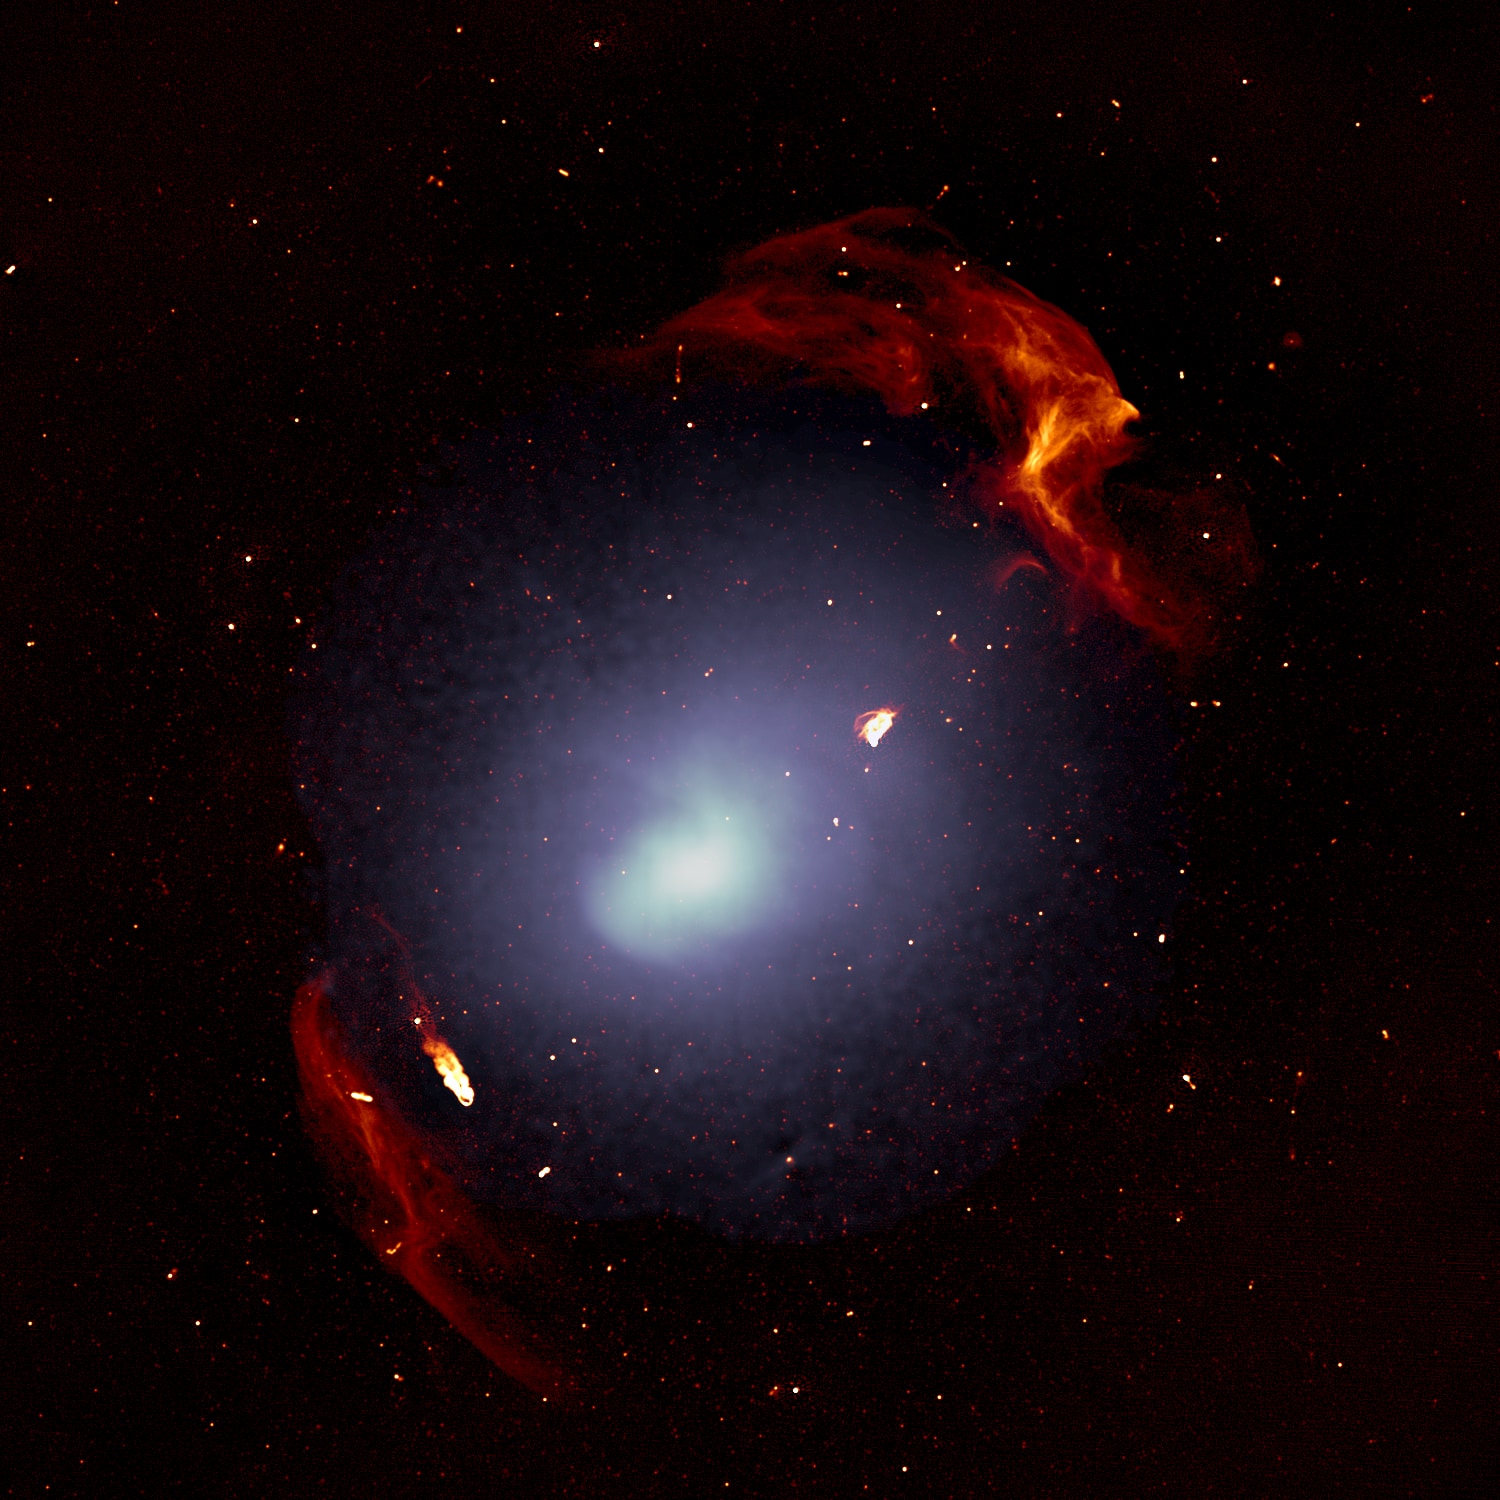 銀河団エイベル3667。個々の銀河は小さすぎて画像には映っていない。白いモヤは銀河団に浸透するガスの分布。赤い構造がエイベル3667が掲載された際に生じた衝撃波。